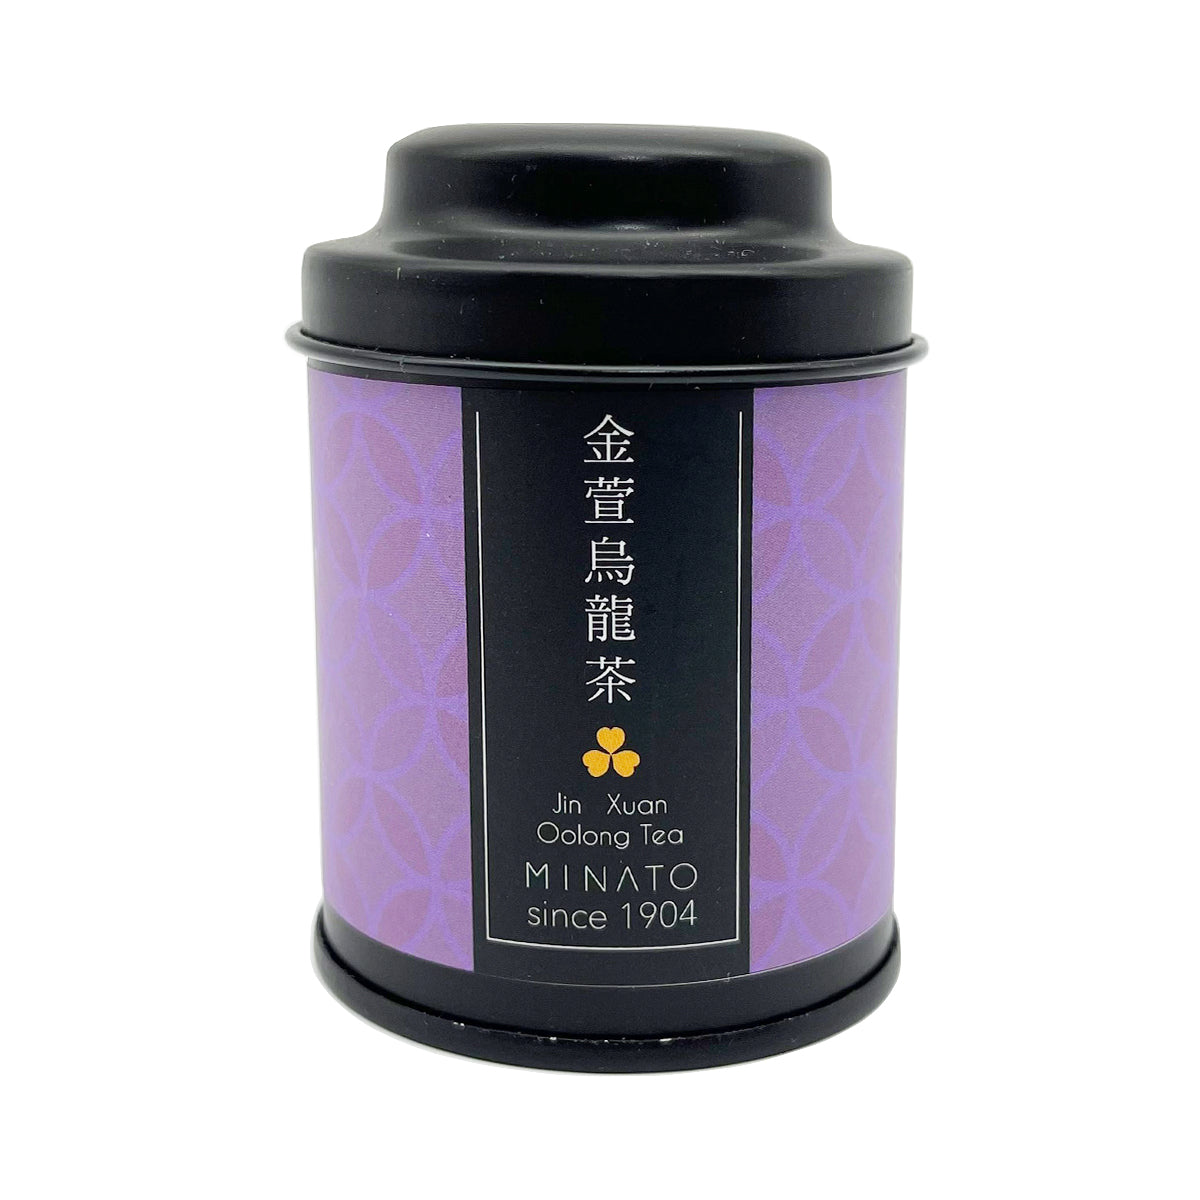 【 MINATO 】 Jin Xuan Oolong Tea (mini round black tin) 25g